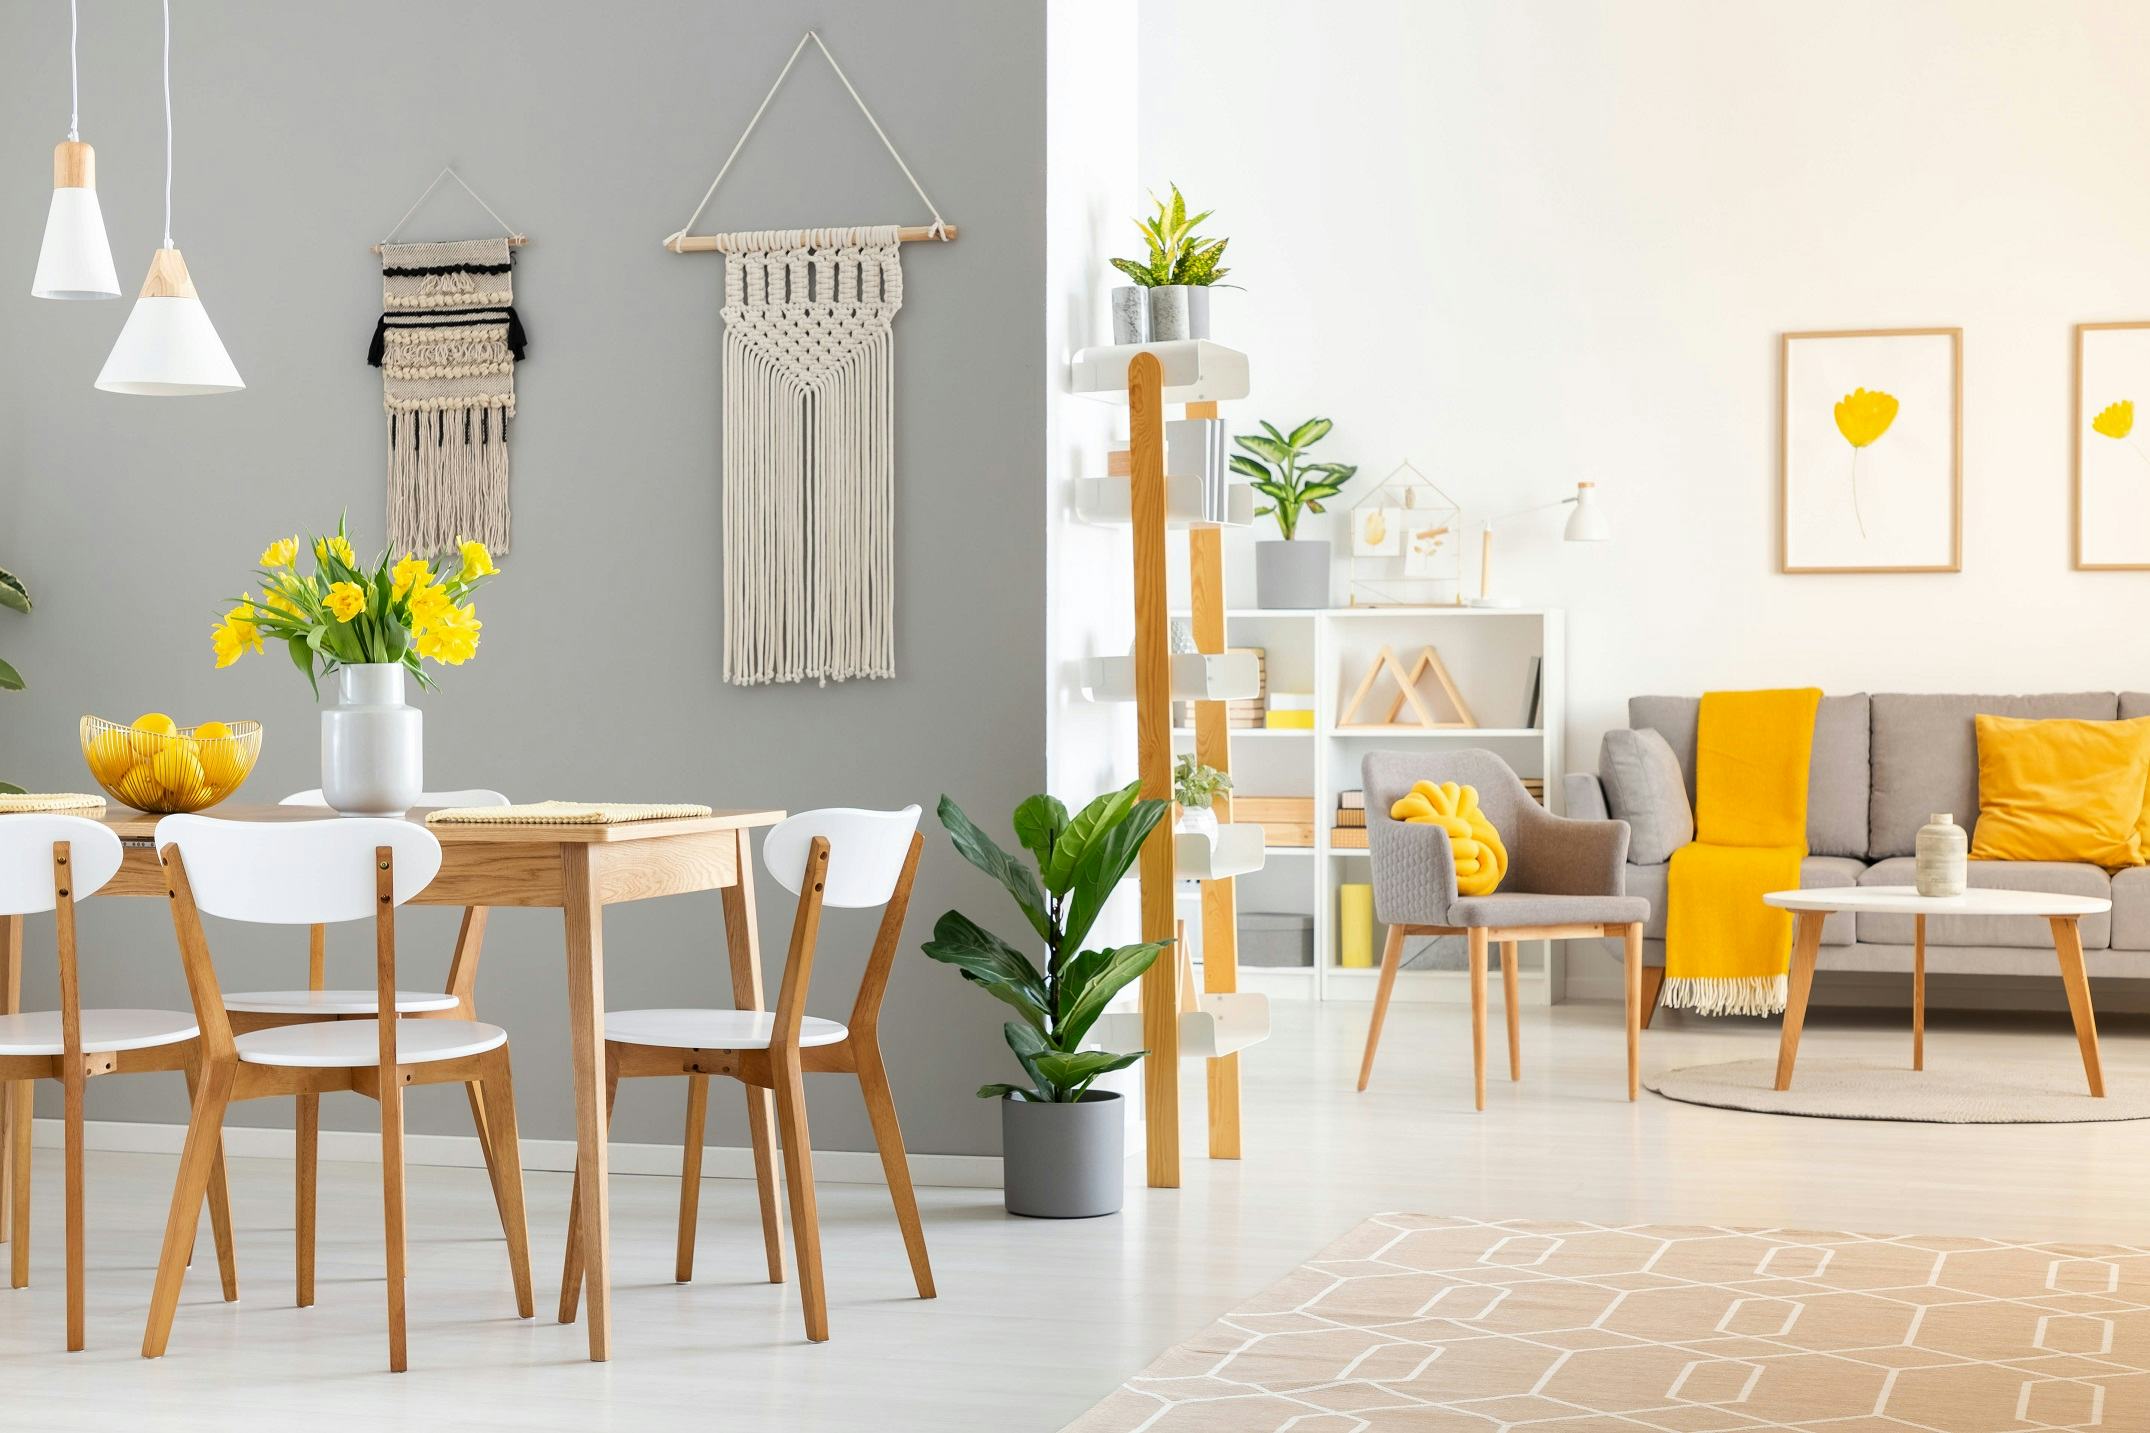 Move&Rent: meubels huren als duurzame oplossing